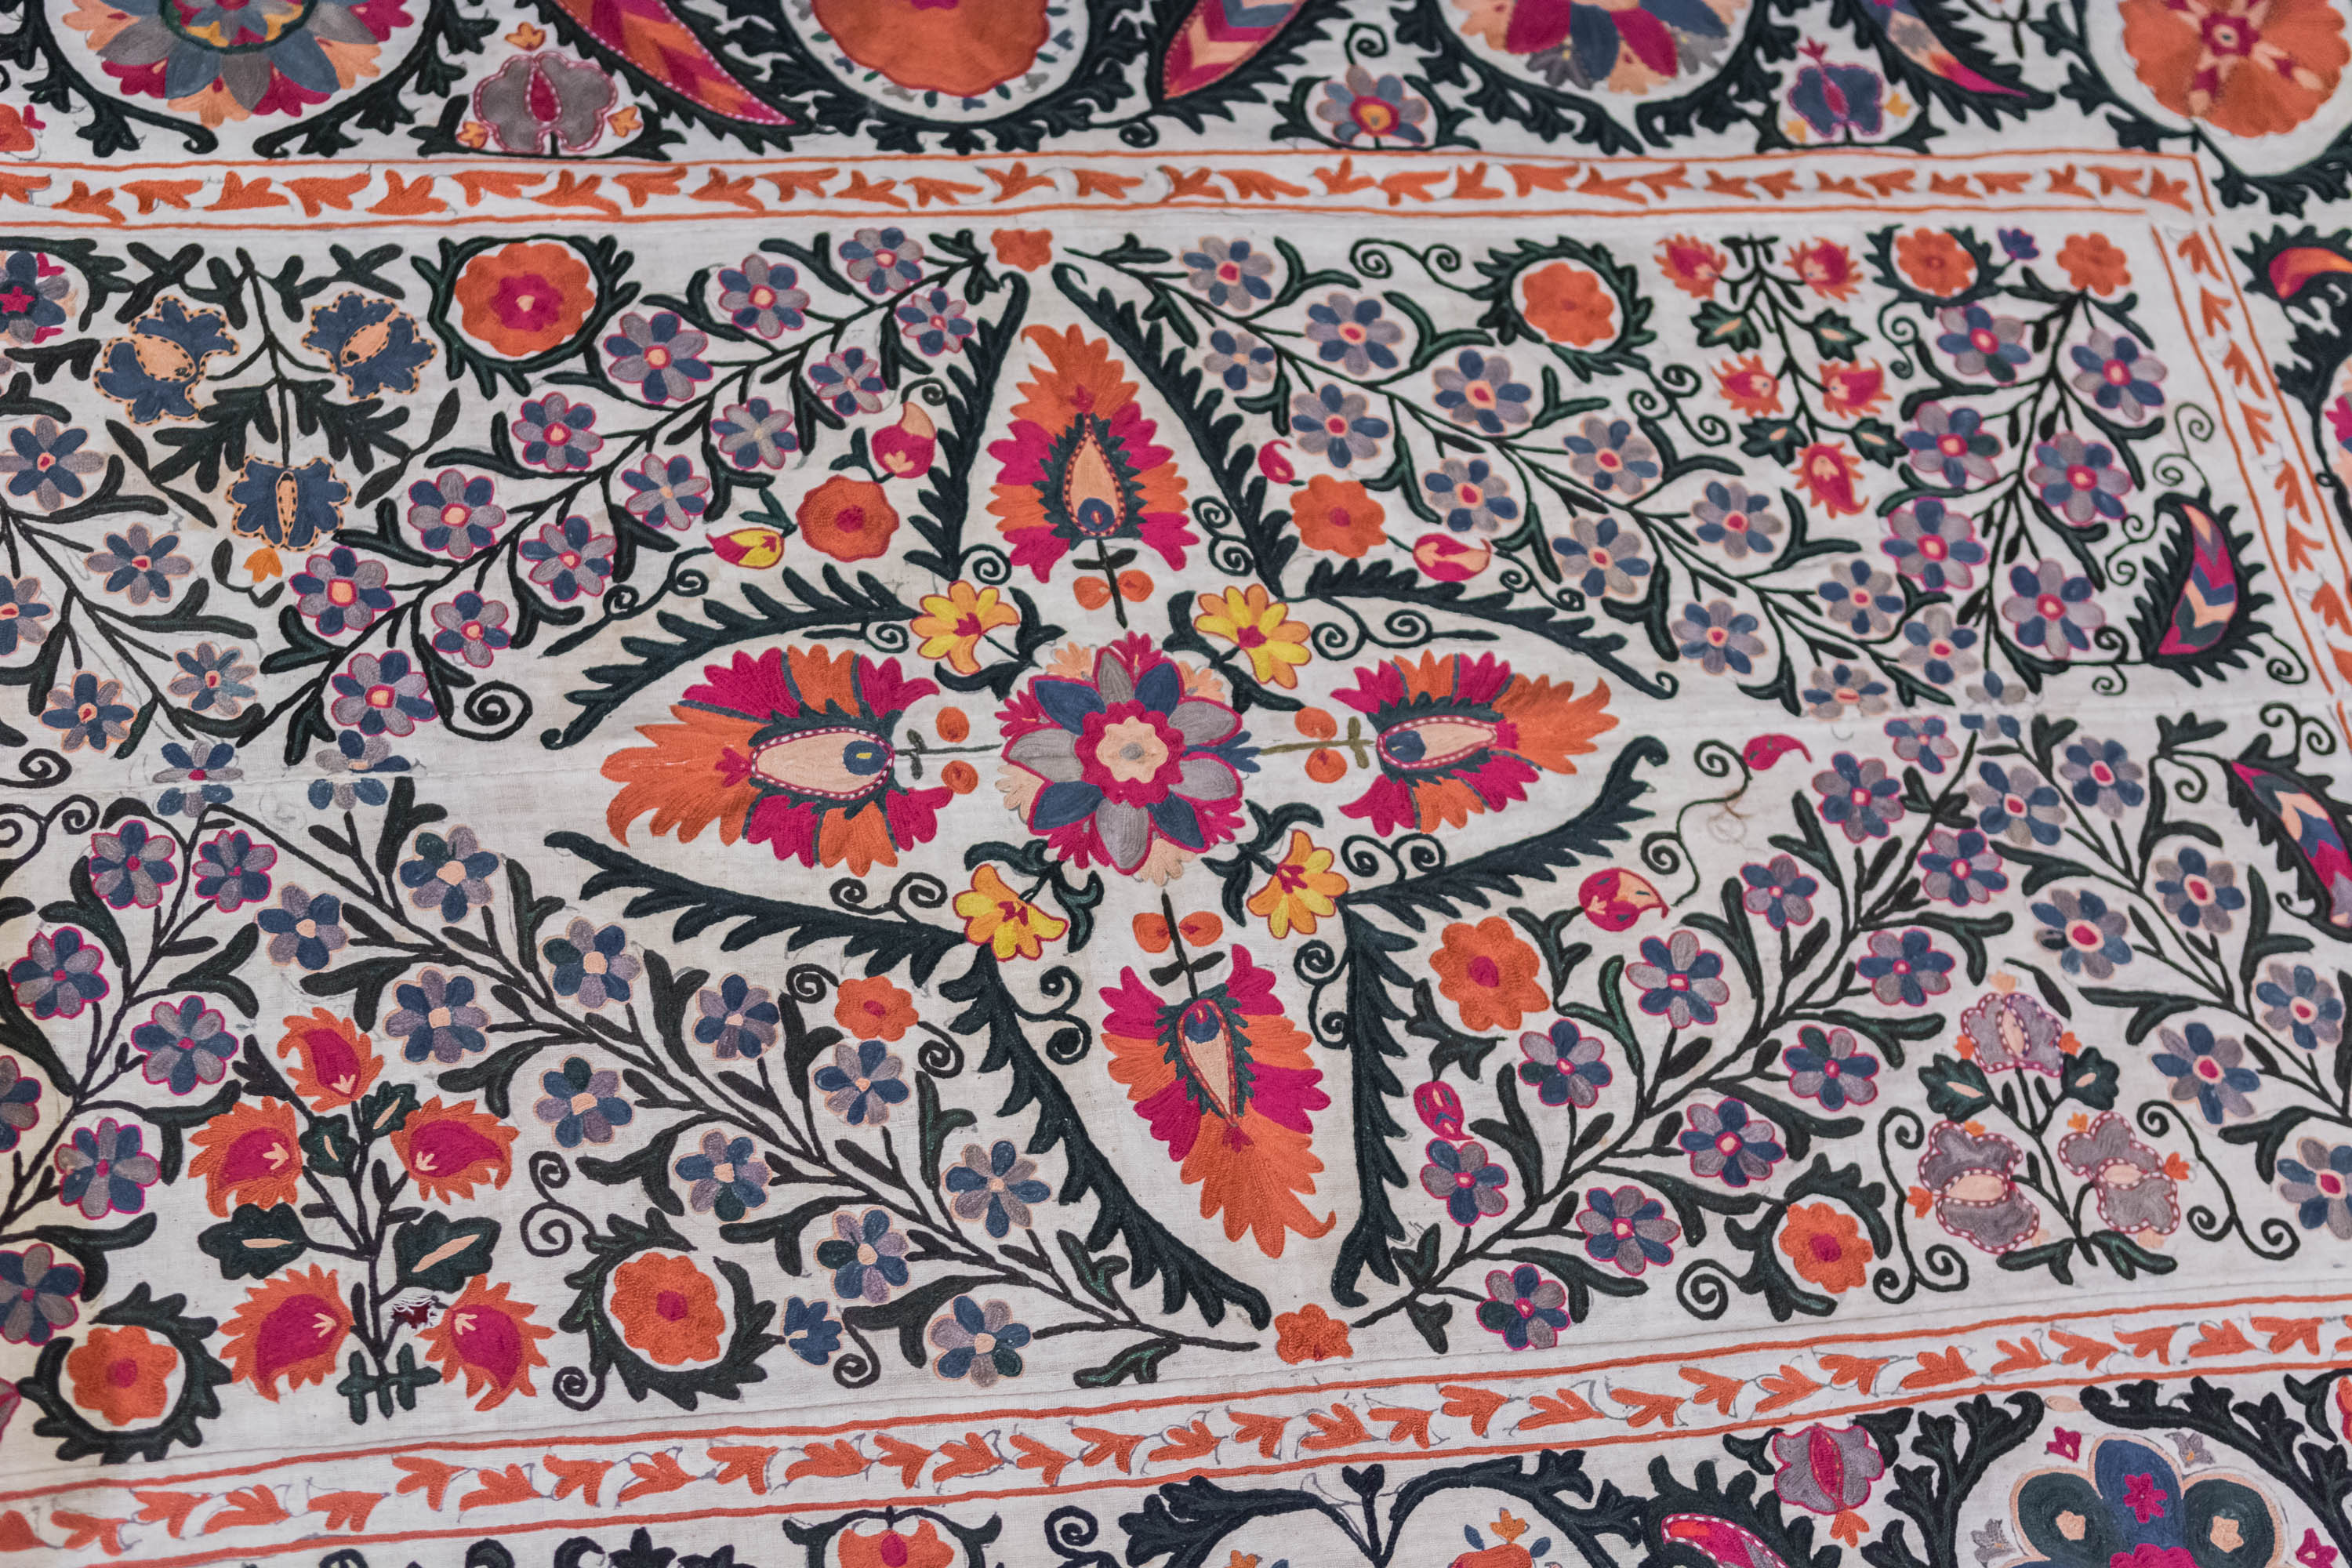 Шелковые нити Узбекистана — традиционные вышивки и ткани6